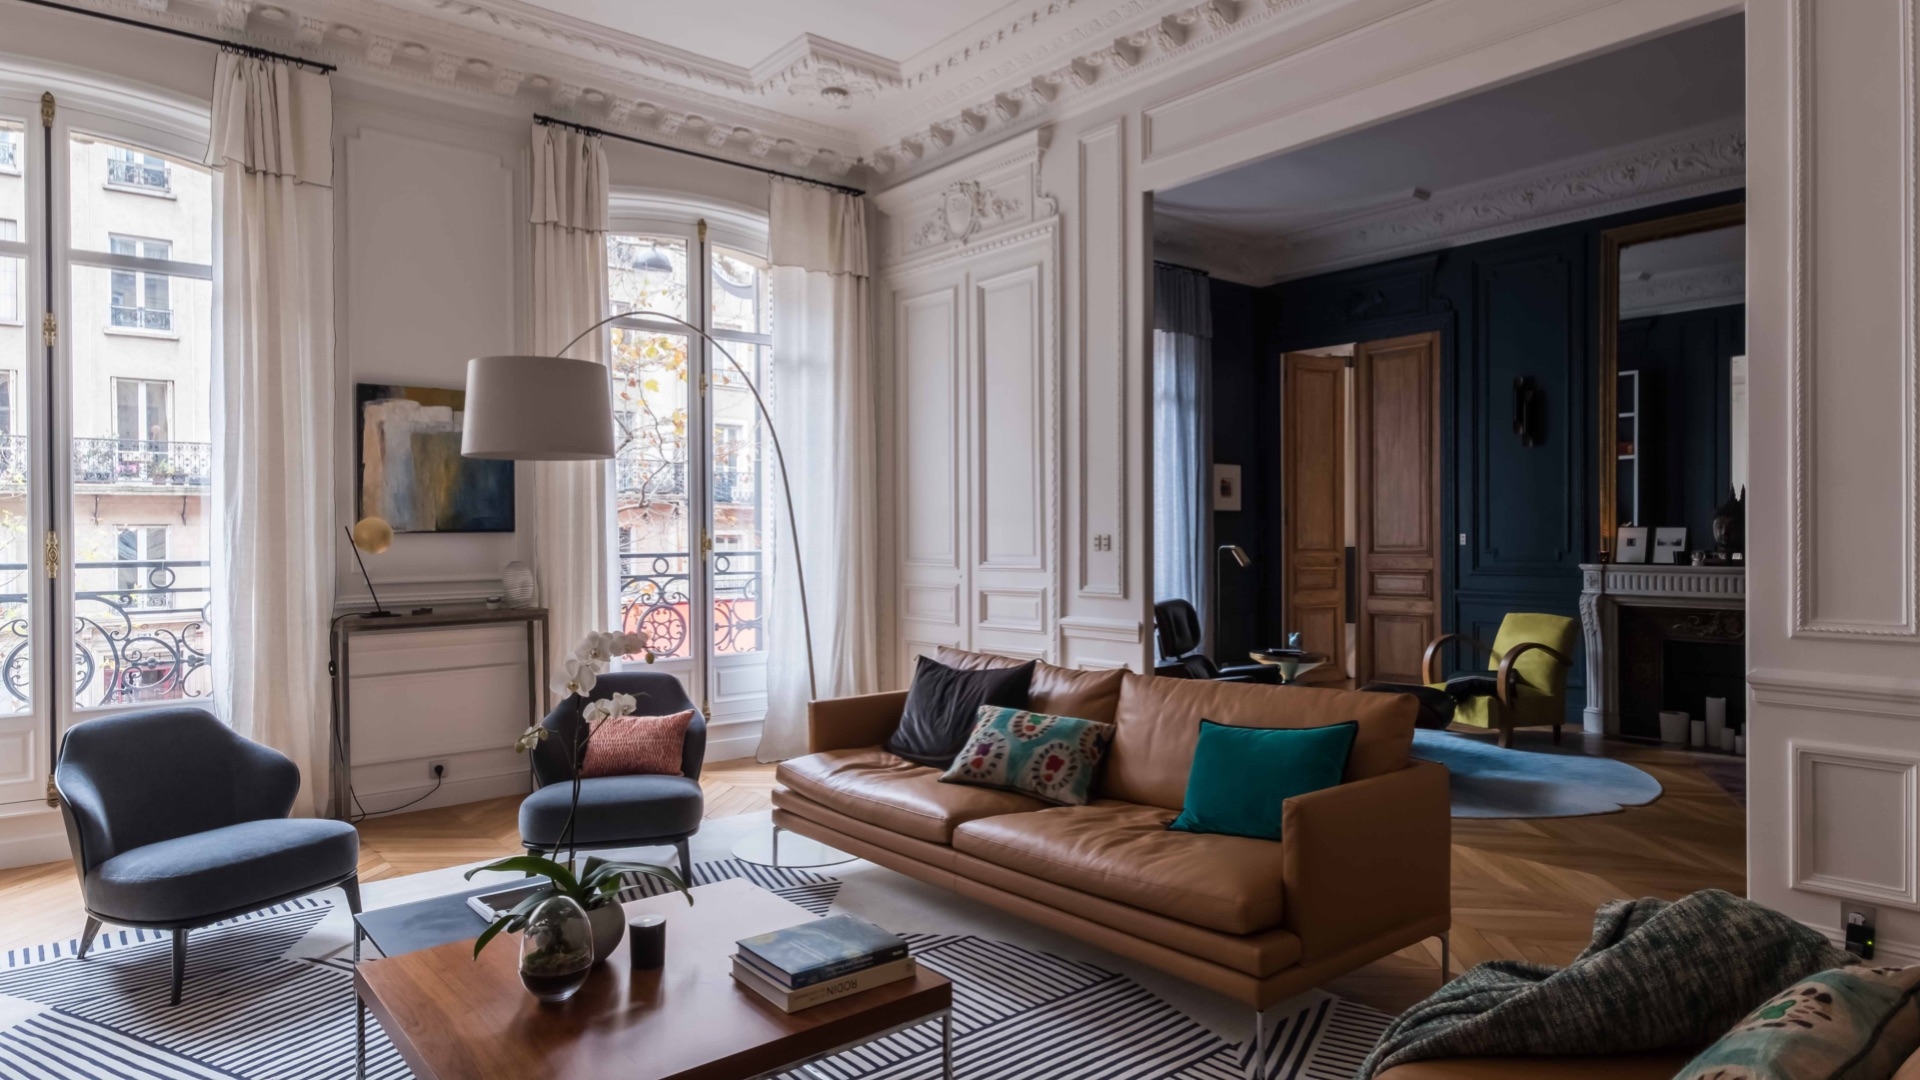 Cet appartement parisien bénéficie d’un design haussmannien et contemporain après sa rénovation